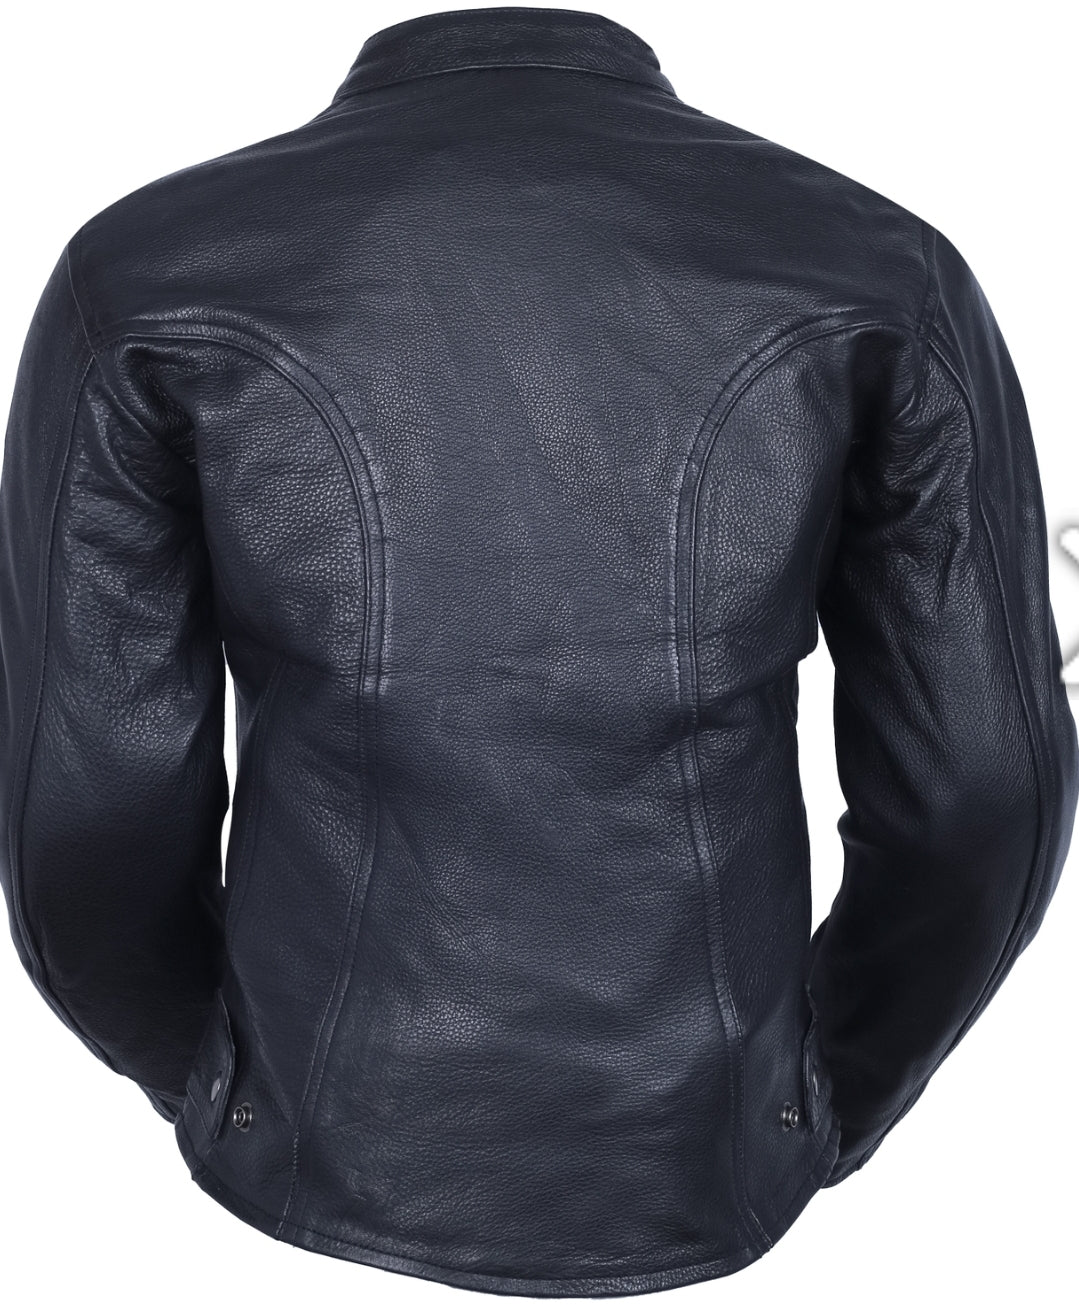 Womens Leather Motorcycle Jacket – BRUTE BIKER GEAR